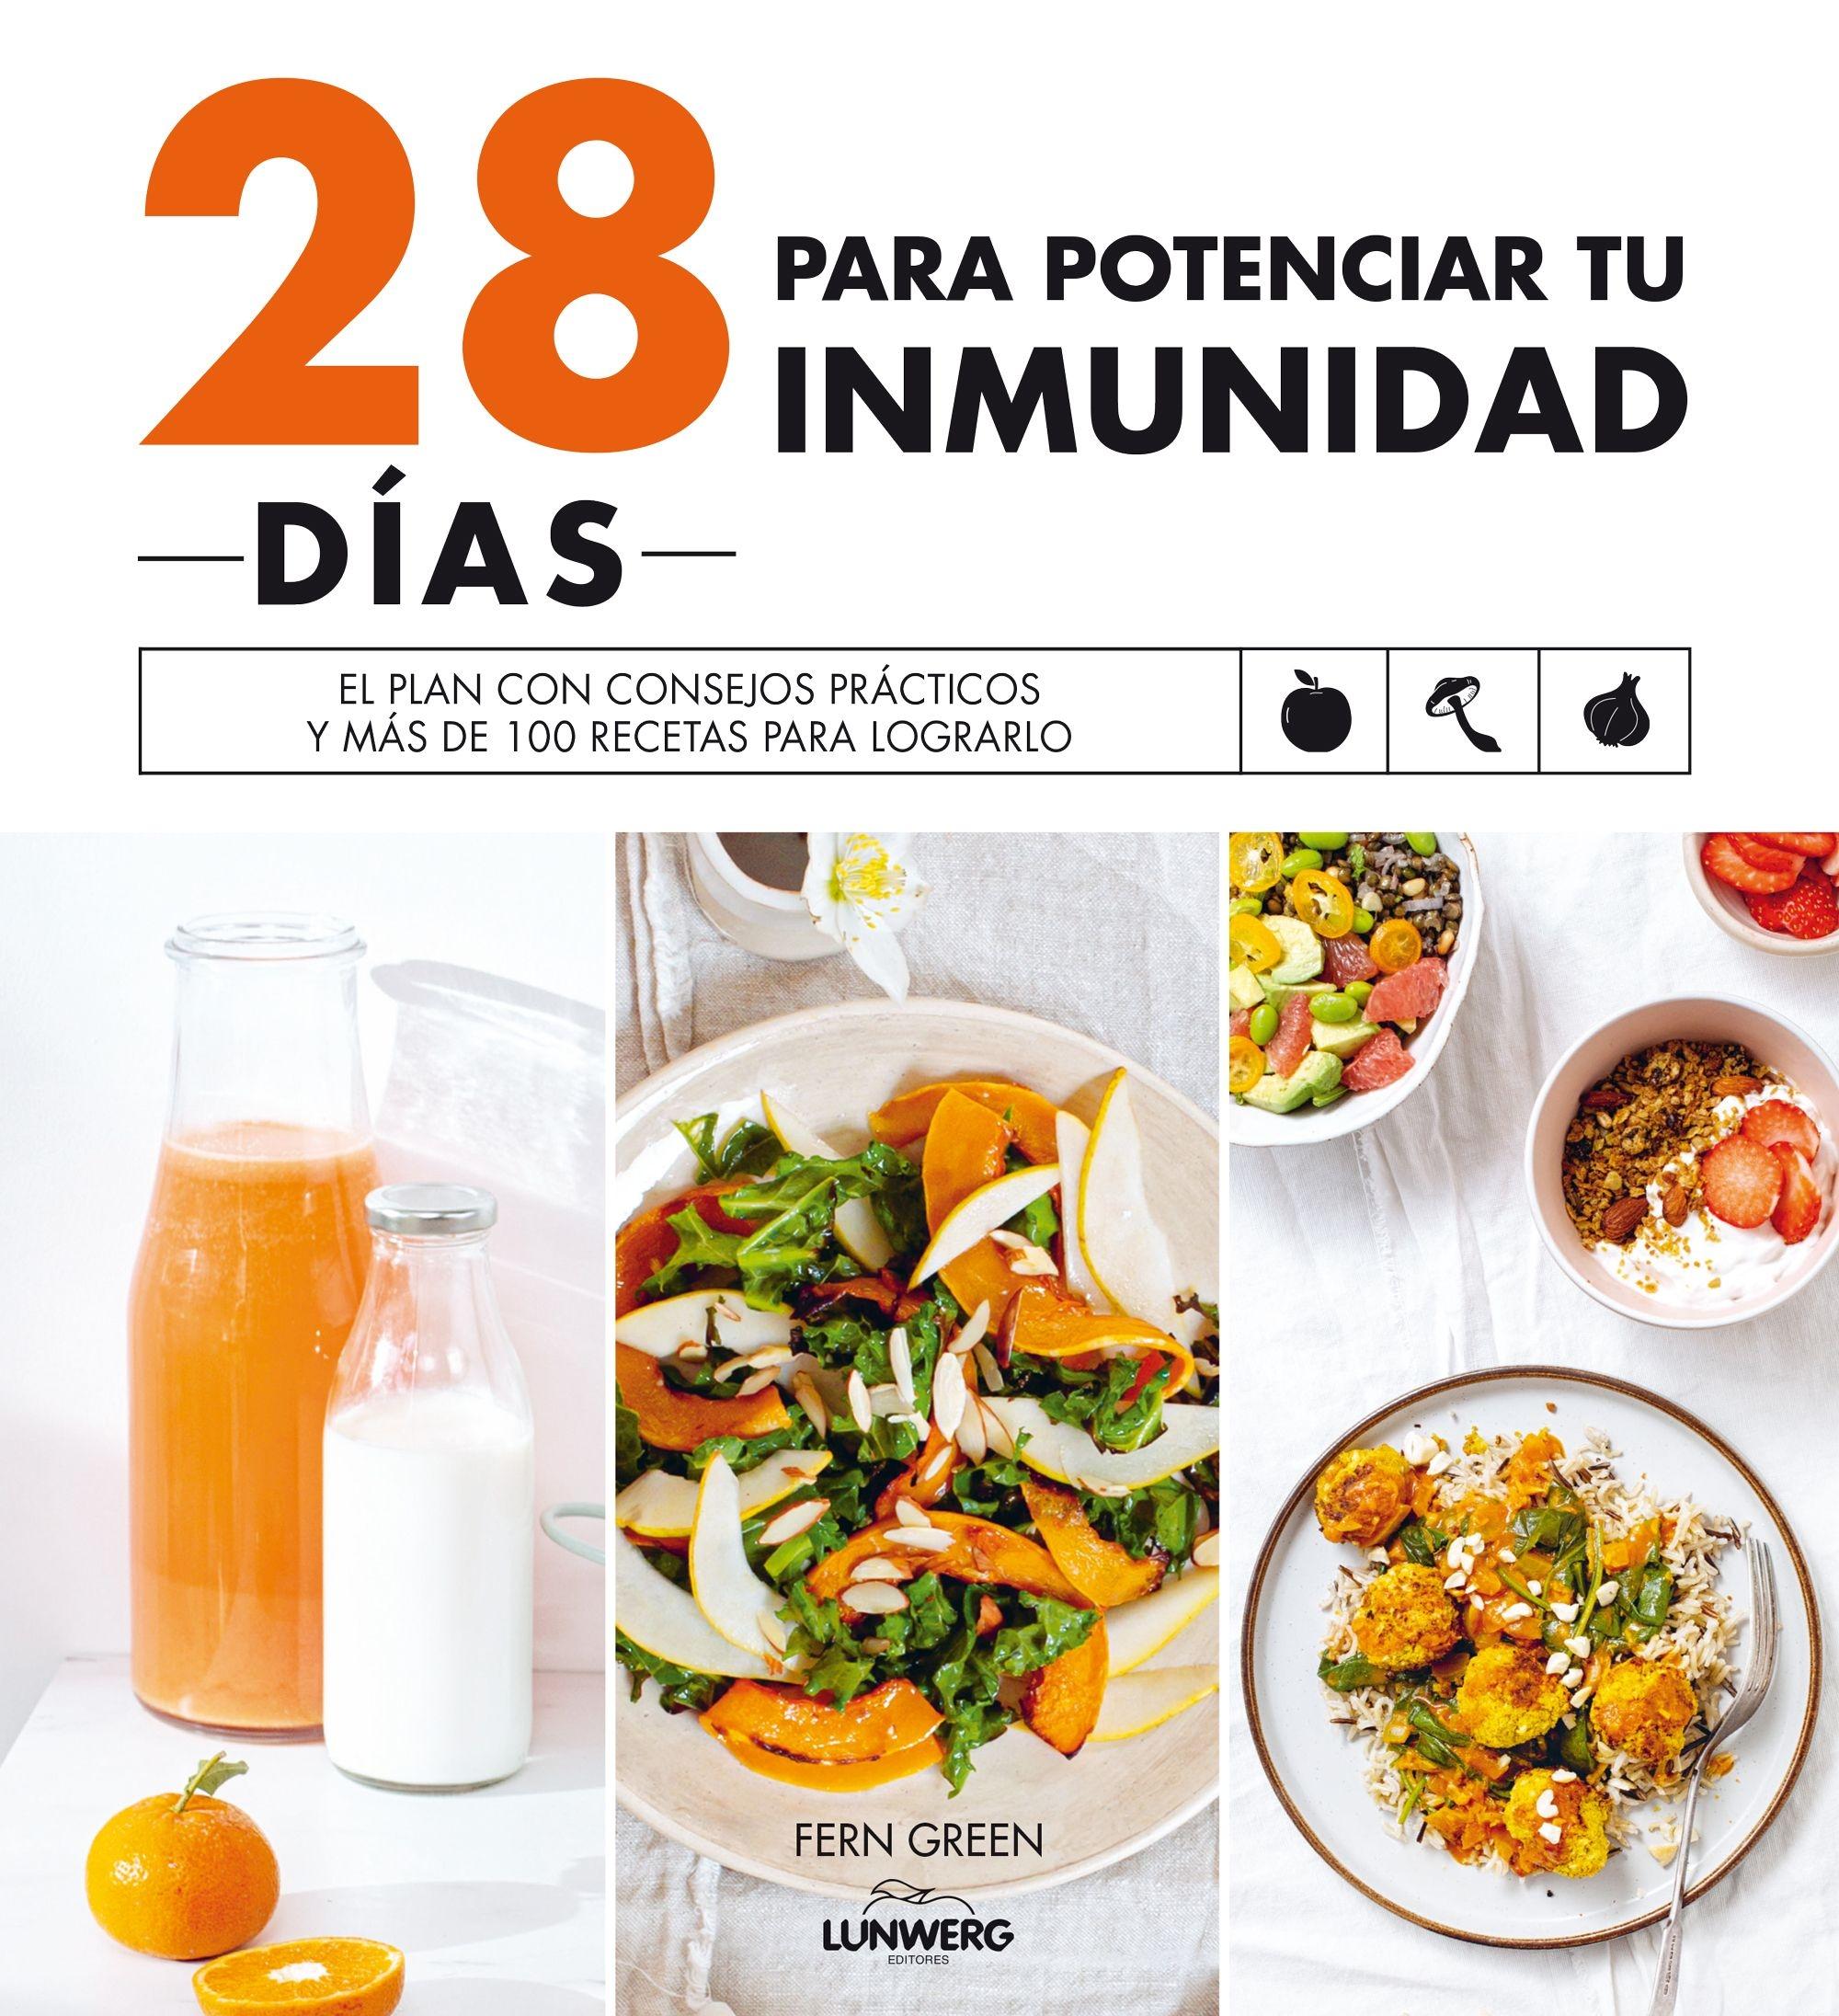 28 días para potenciar tu inmunidad "El plan con consejos prácticos y más de 100 recetas para lograrlo"